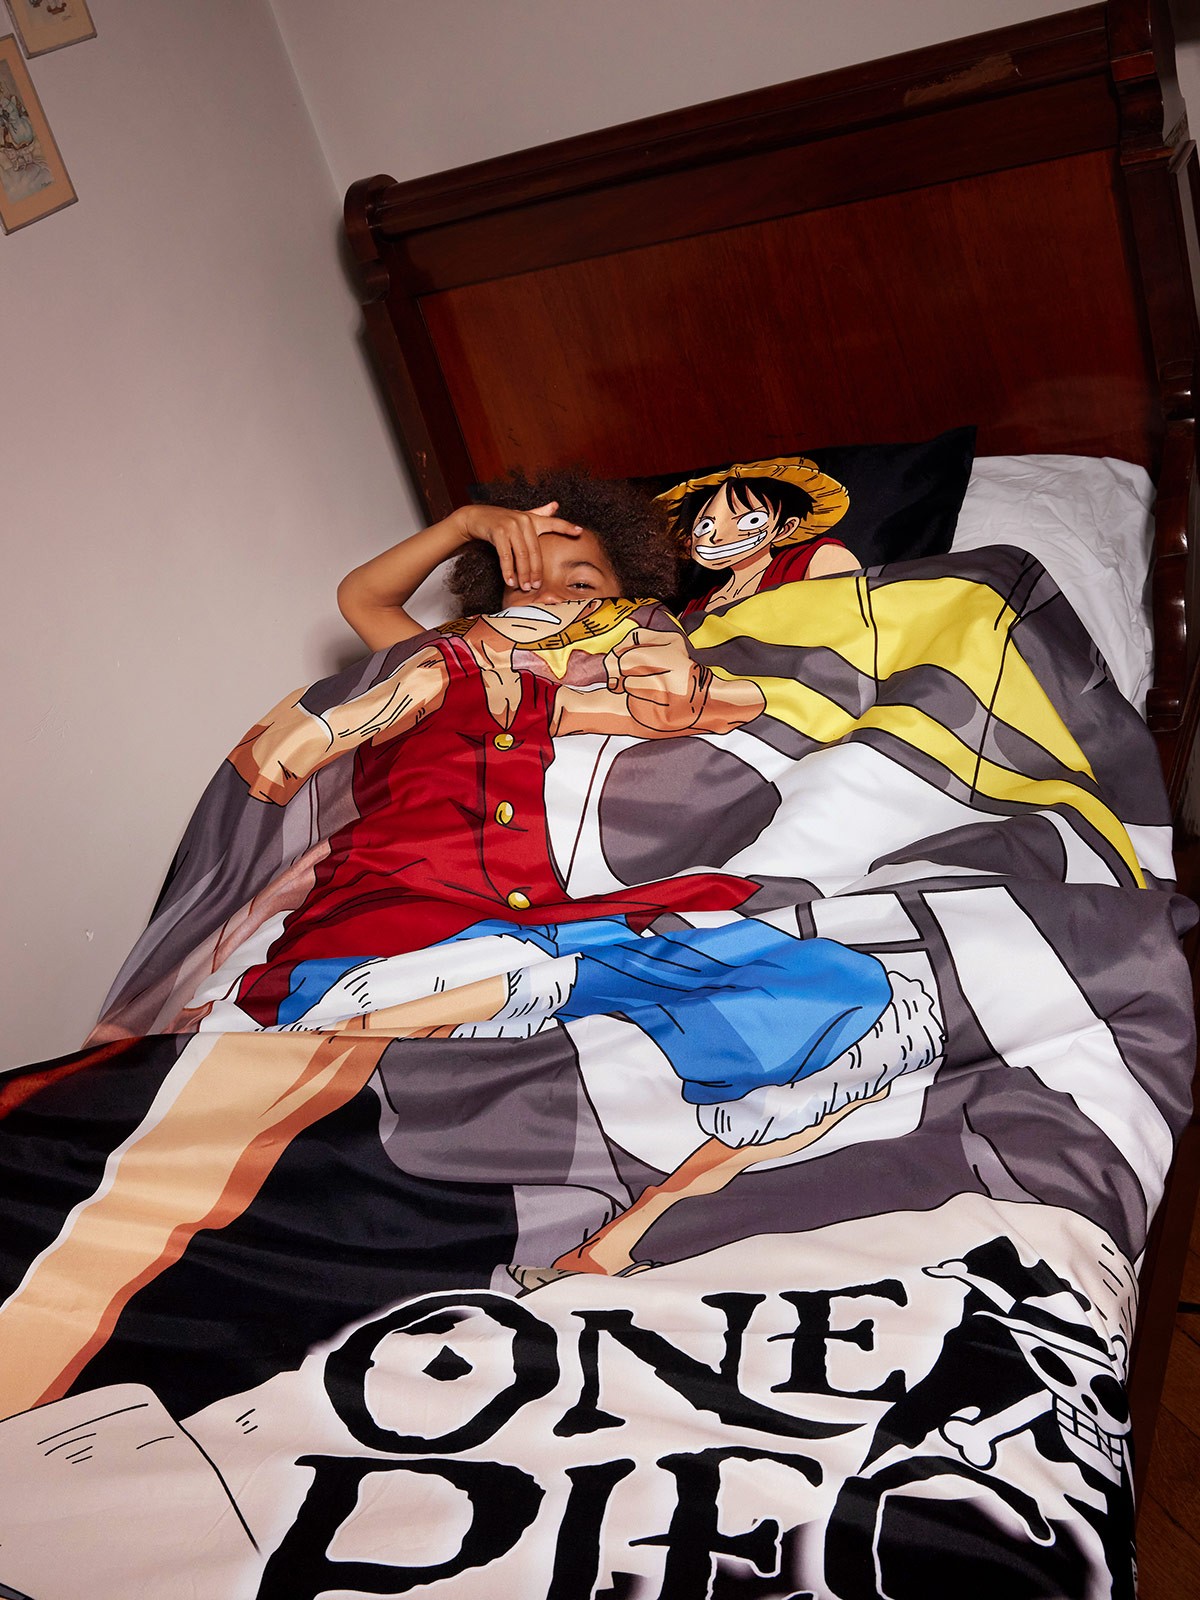 Parure One Piece 140 x 200 cm 1 personne - DistriCenter